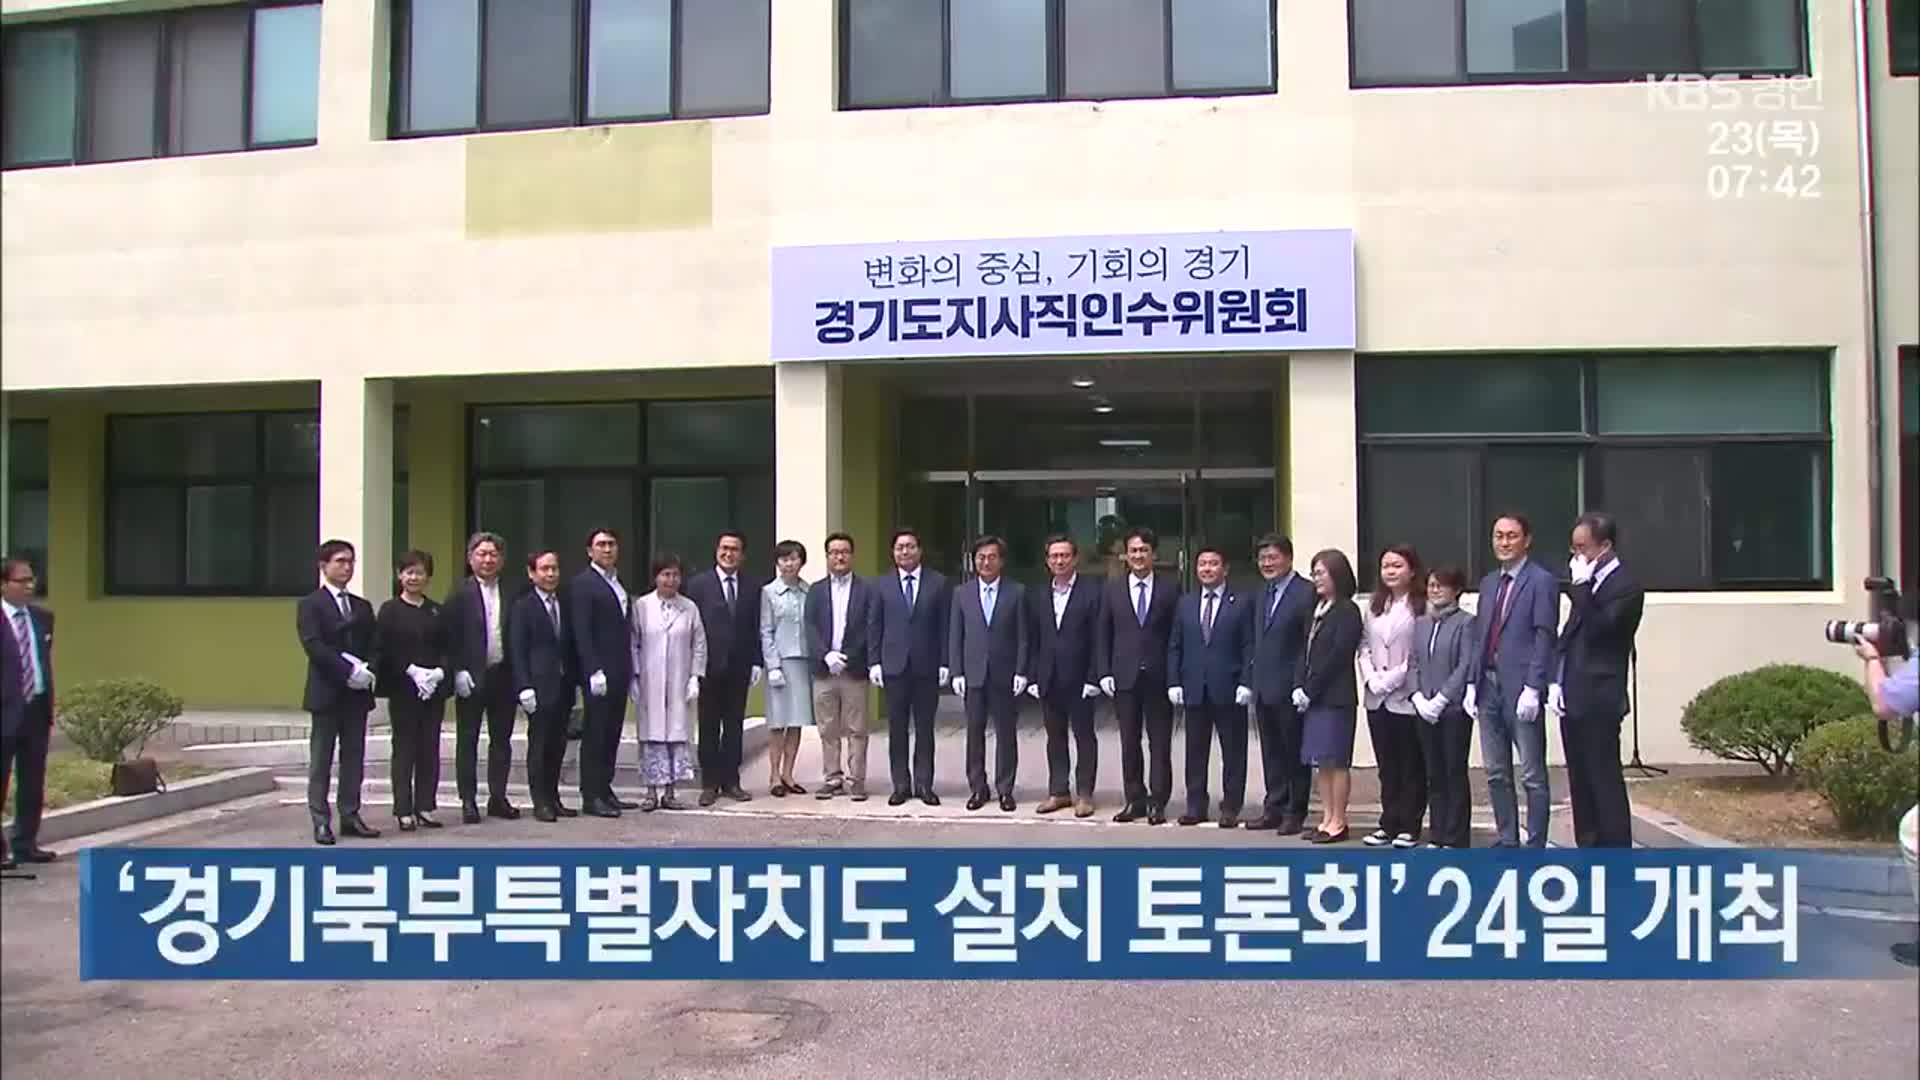 ‘경기북부특별자치도 설치 토론회’ 24일 개최